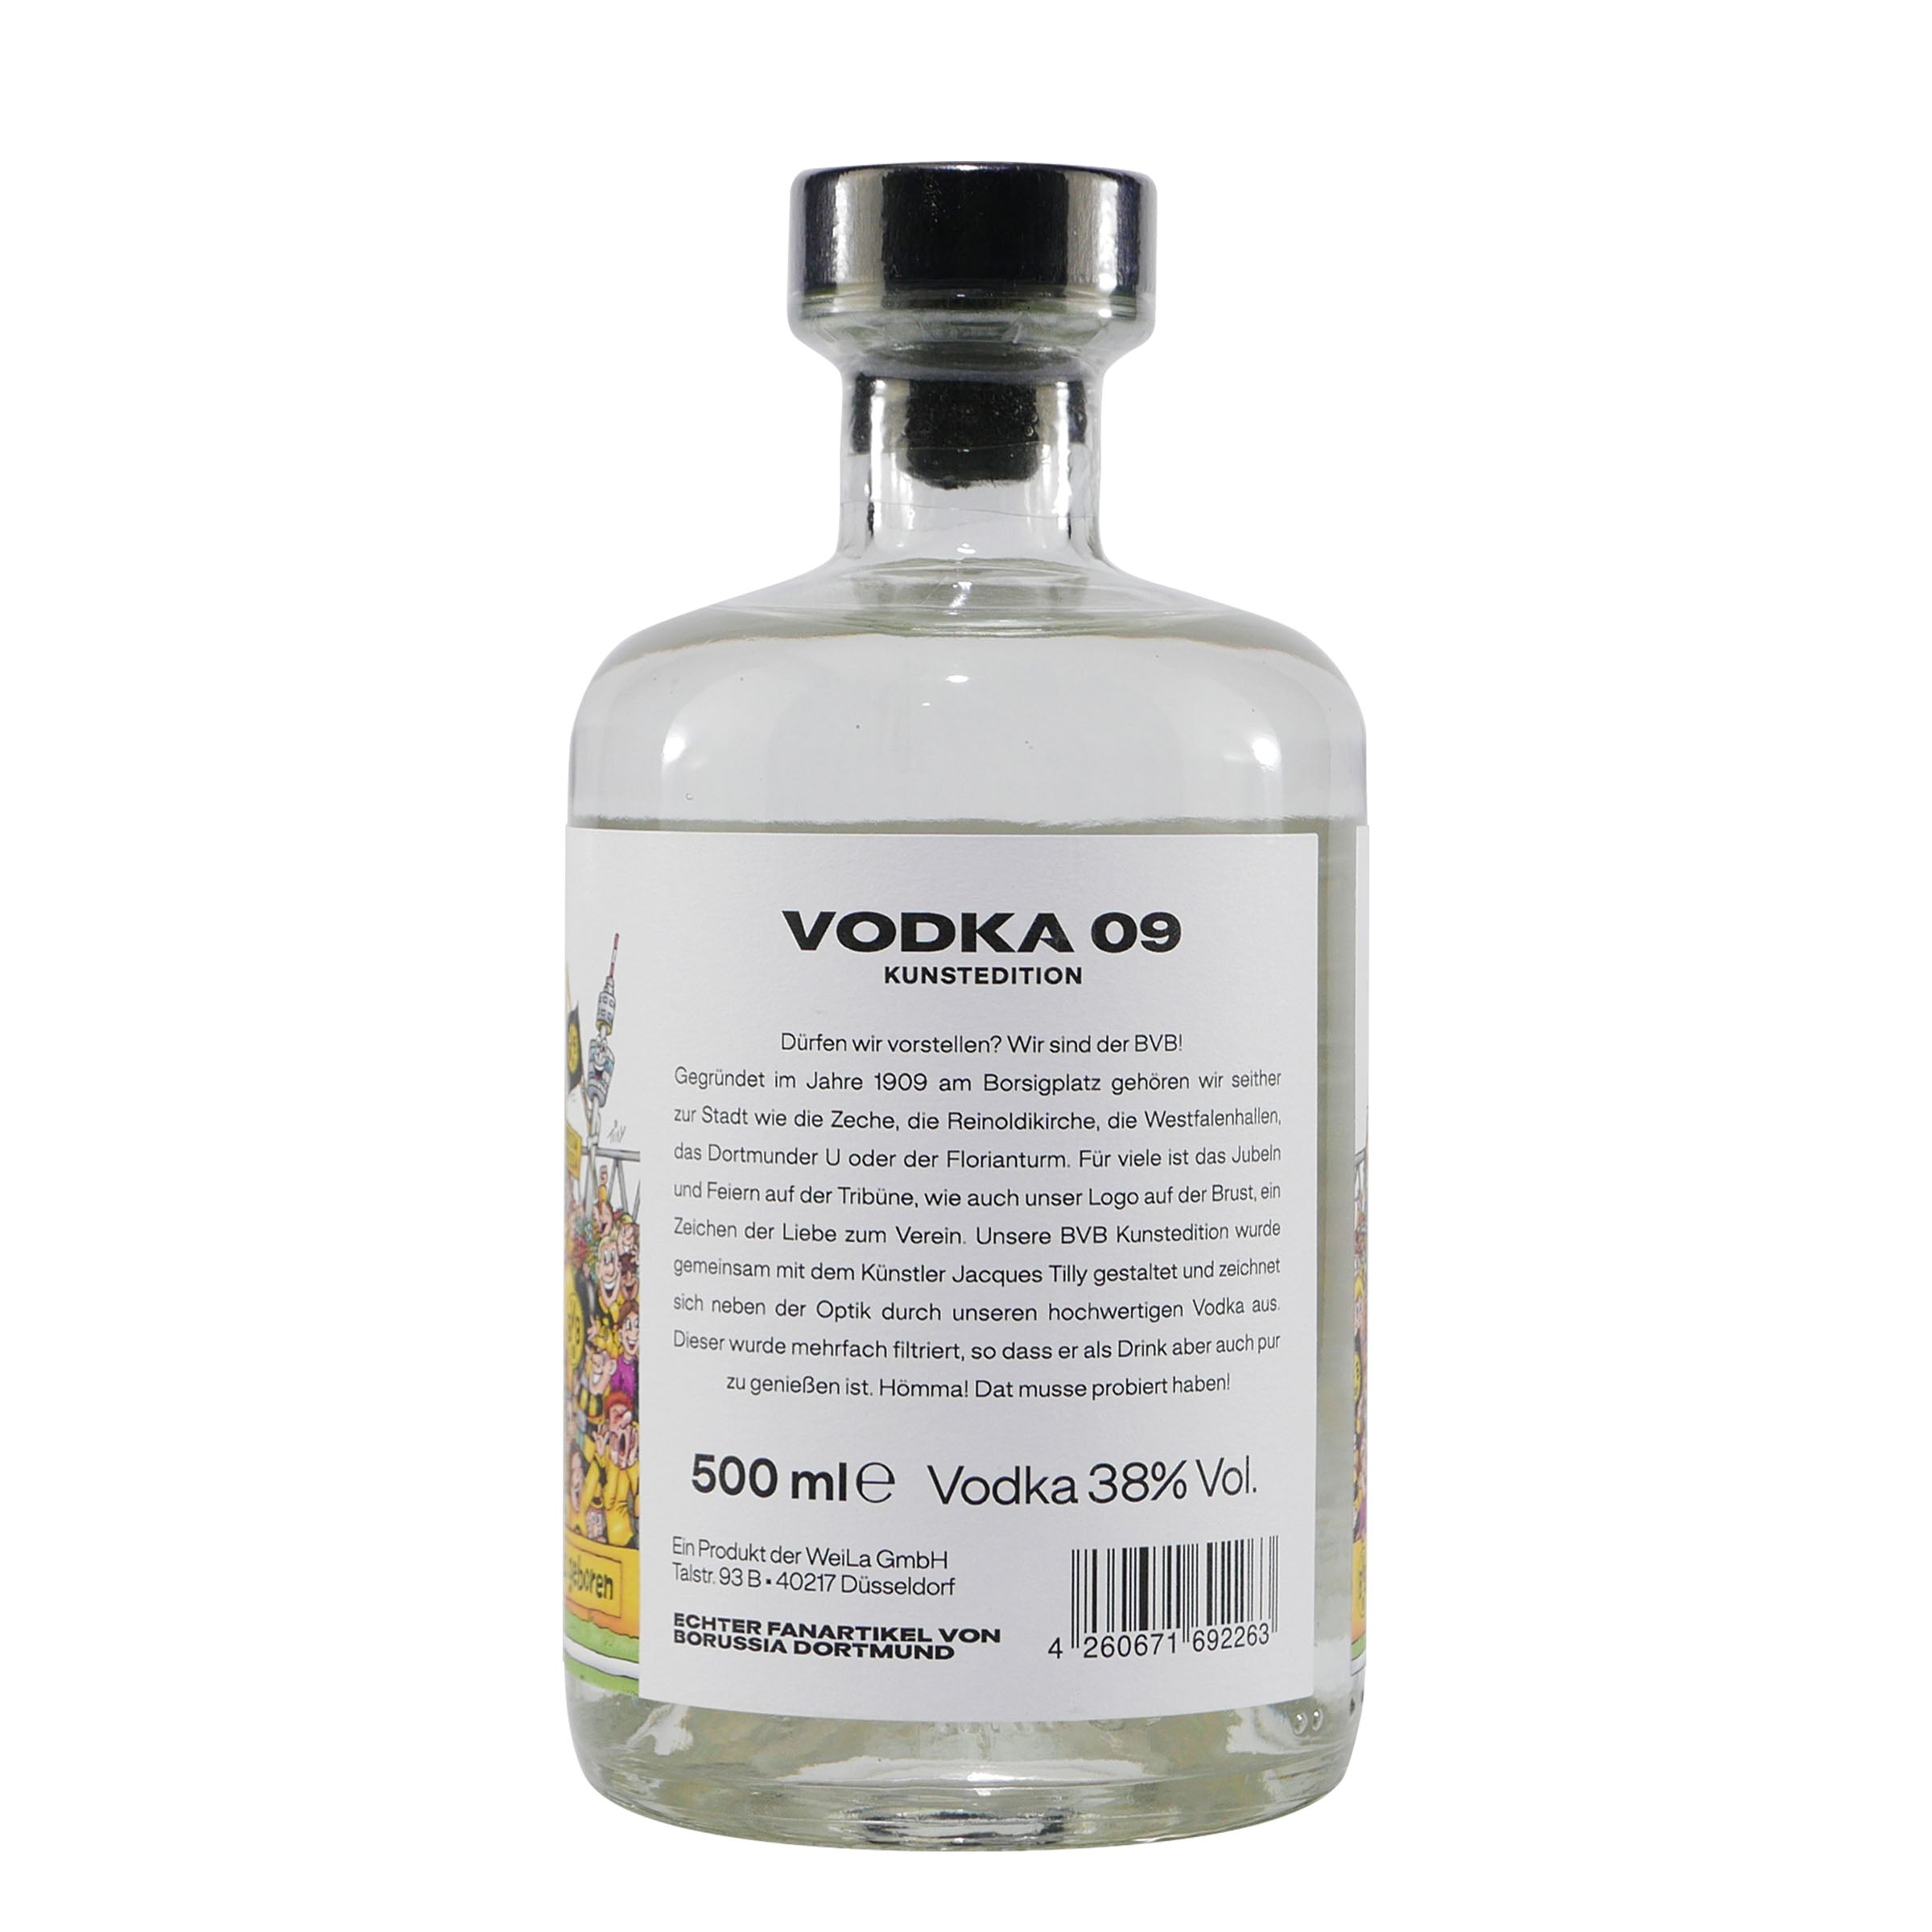 BVB Vodka 09 Kunstedition mit Geschenk-Holzkiste